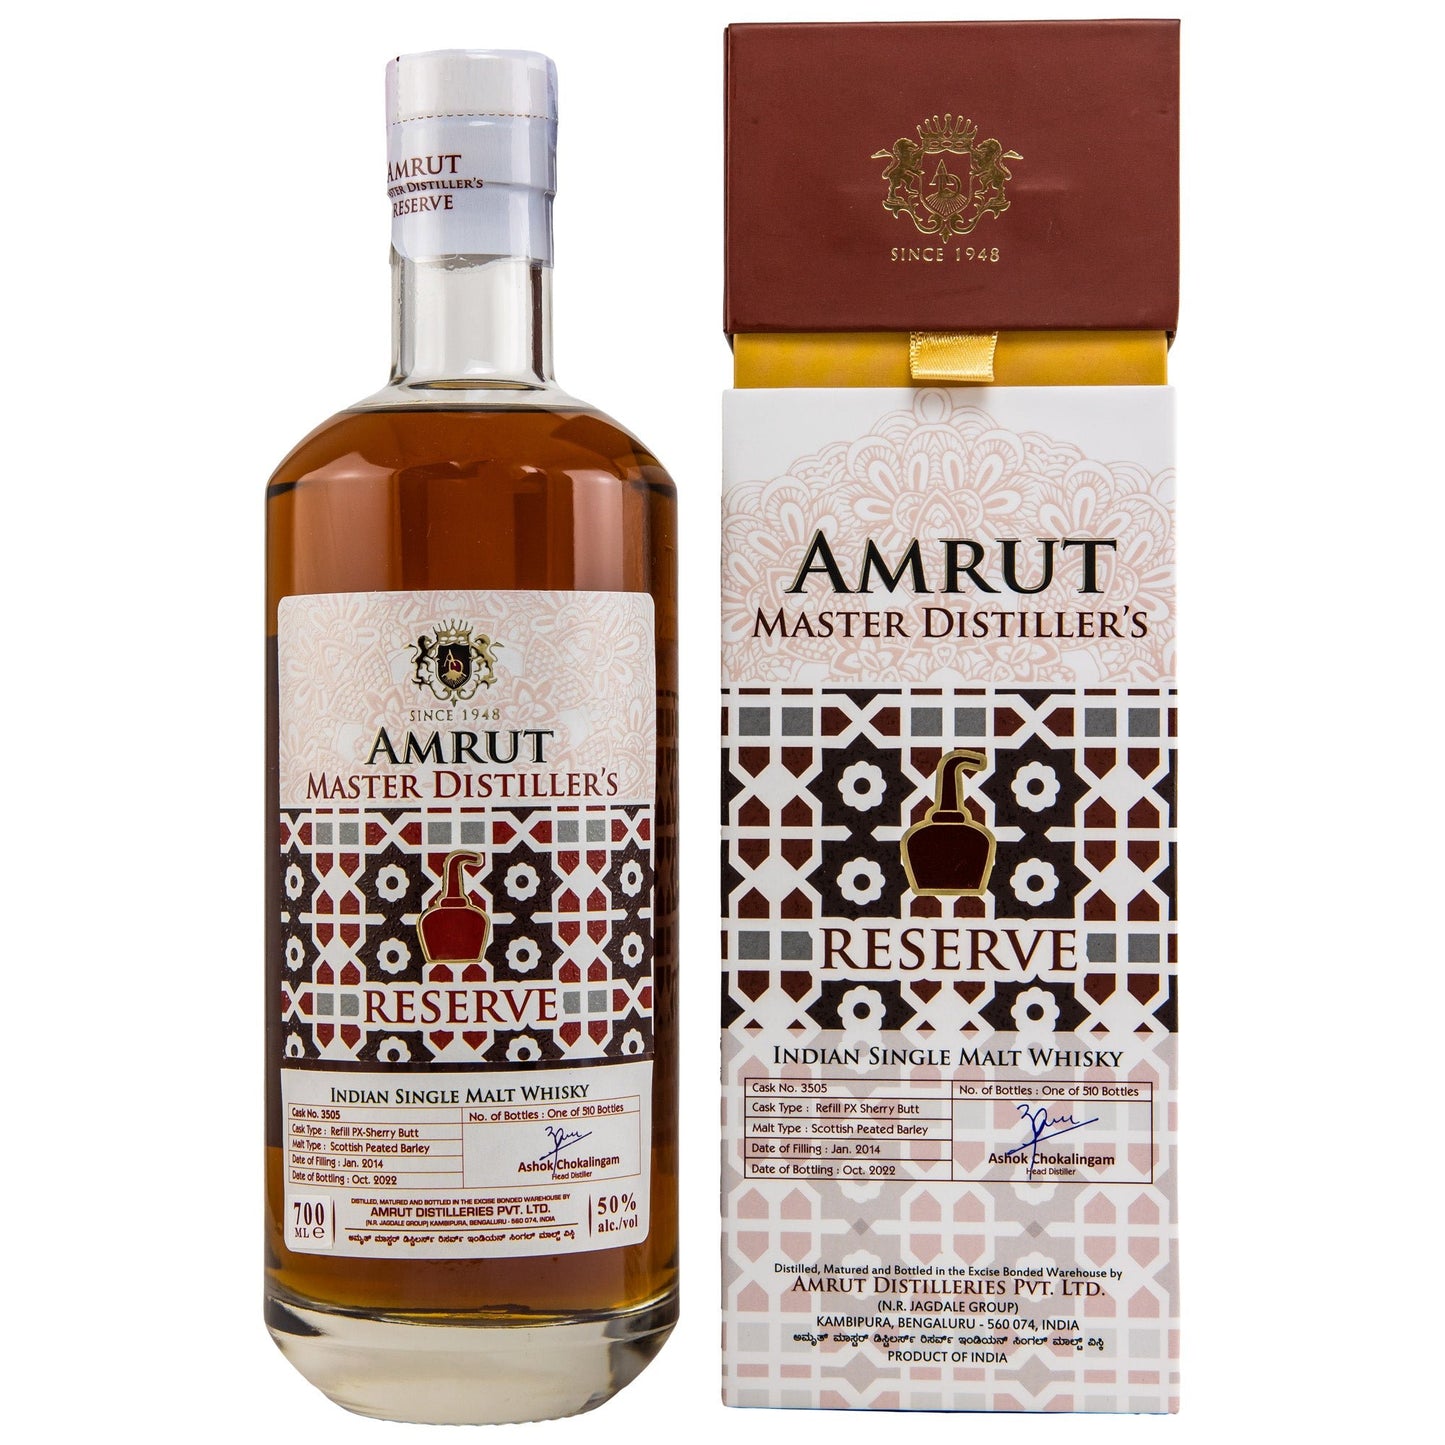 Amrut | Master Distillers Reserve | 8 Jahre | 2014/2022 | PX #3505 | 50%GET A BOTTLE